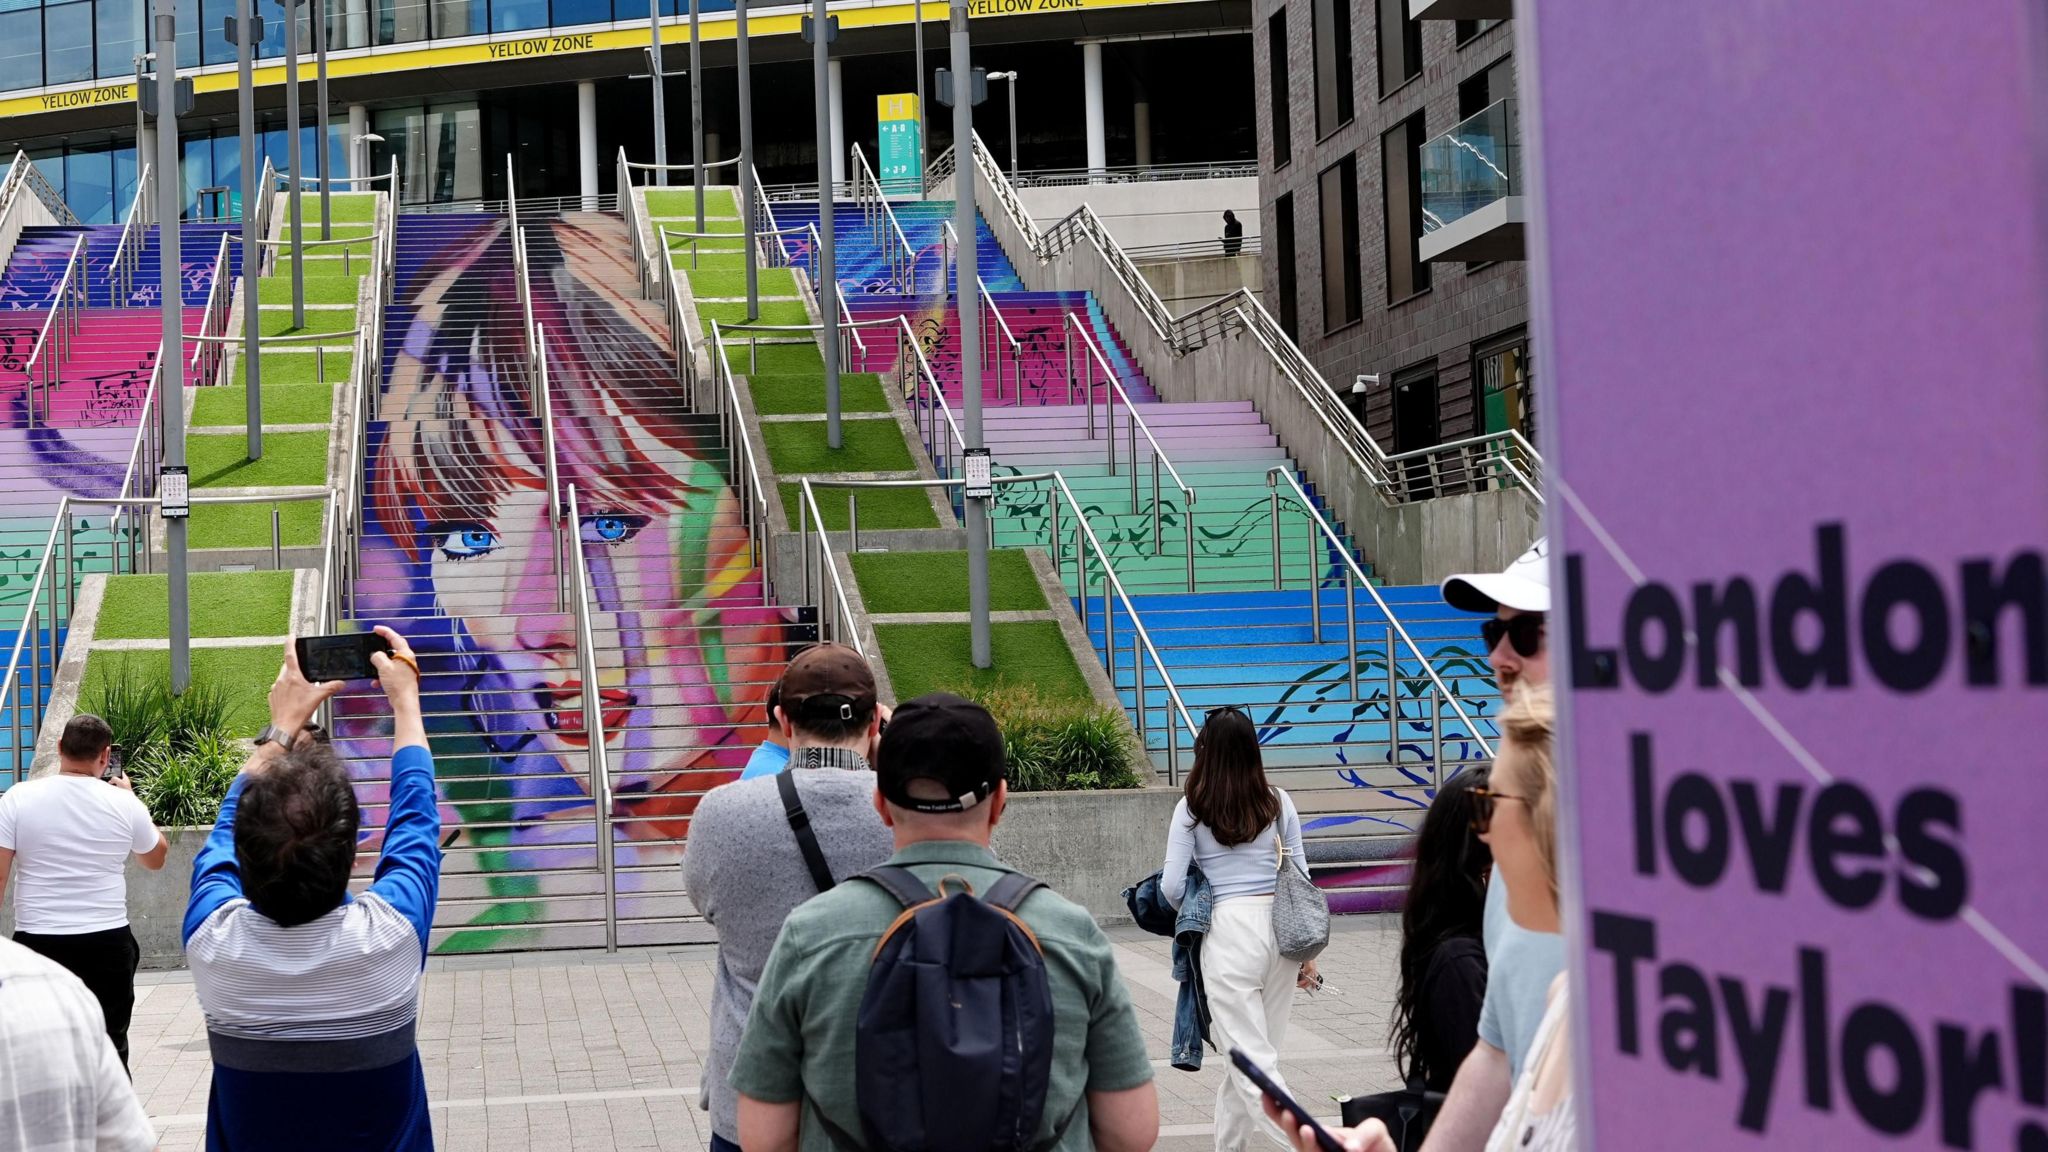 Taylor Swift mural at Wembley Stadium